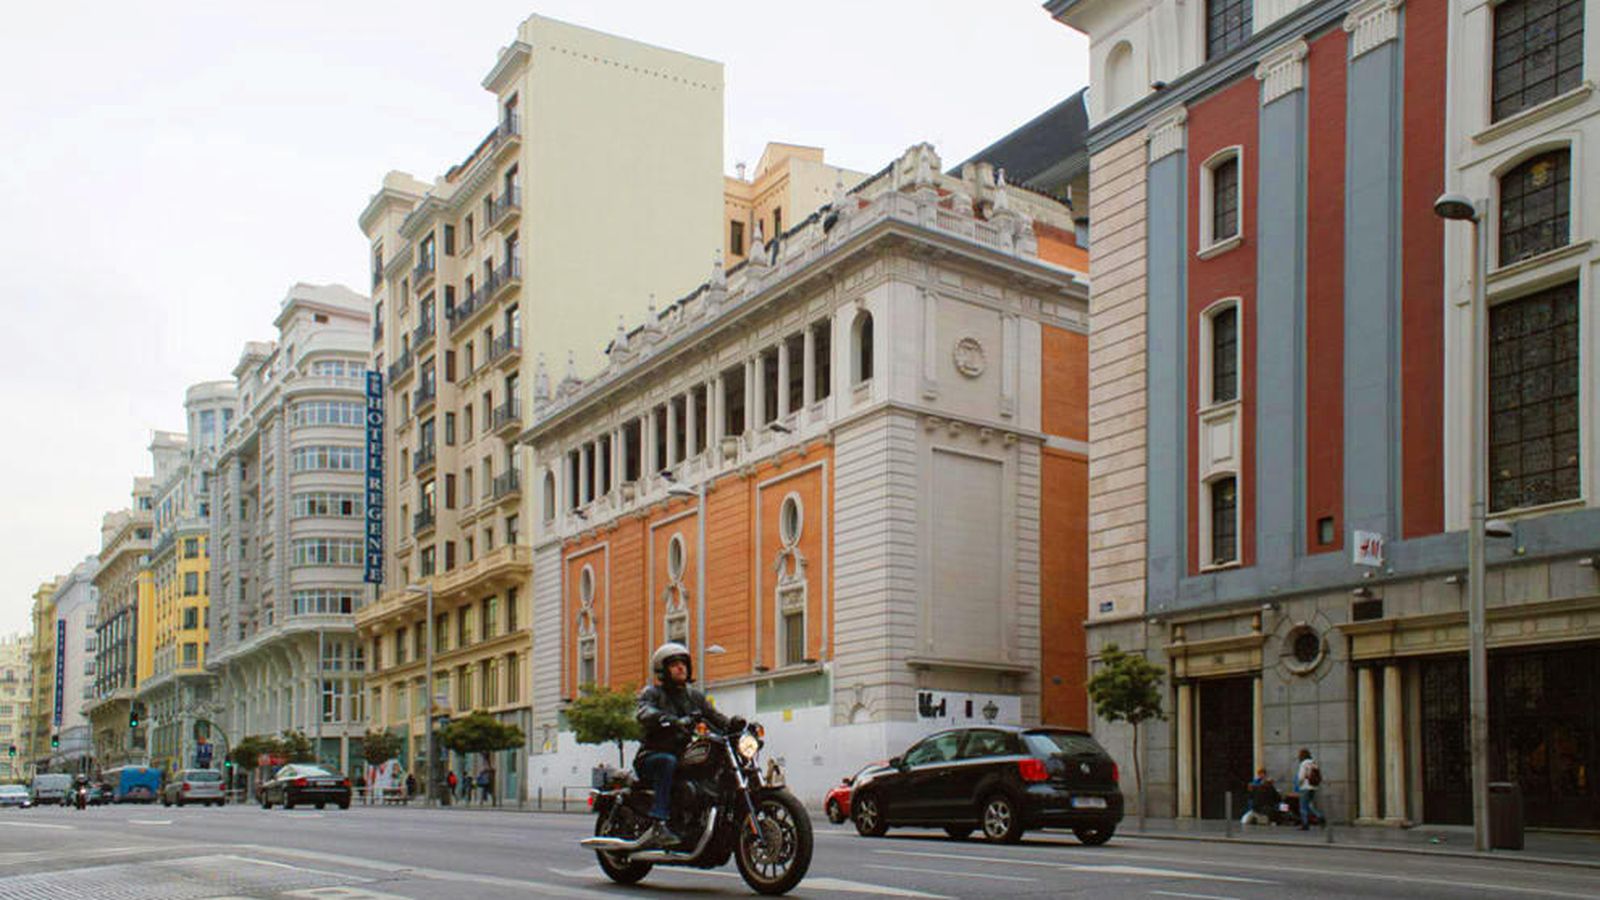 Foto: Edificio del Palacio de la Música (c), ubicado en la Gran Vía de Madrid. (Foto: Pablo López Learte)